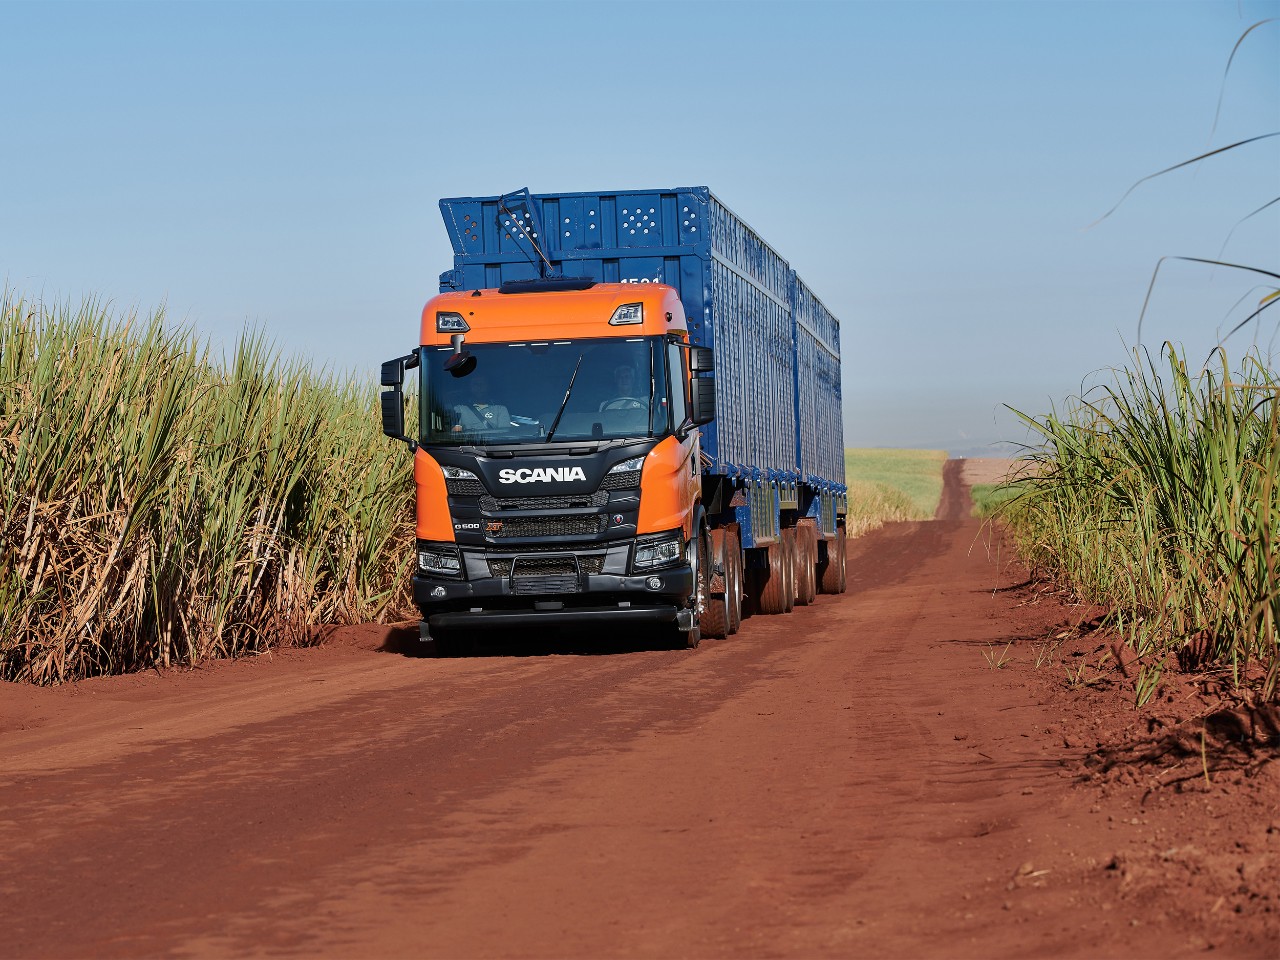 Camion Scania per il trasporto della canna da zucchero. Veicoli per il trasporto agricolo e di bestiame